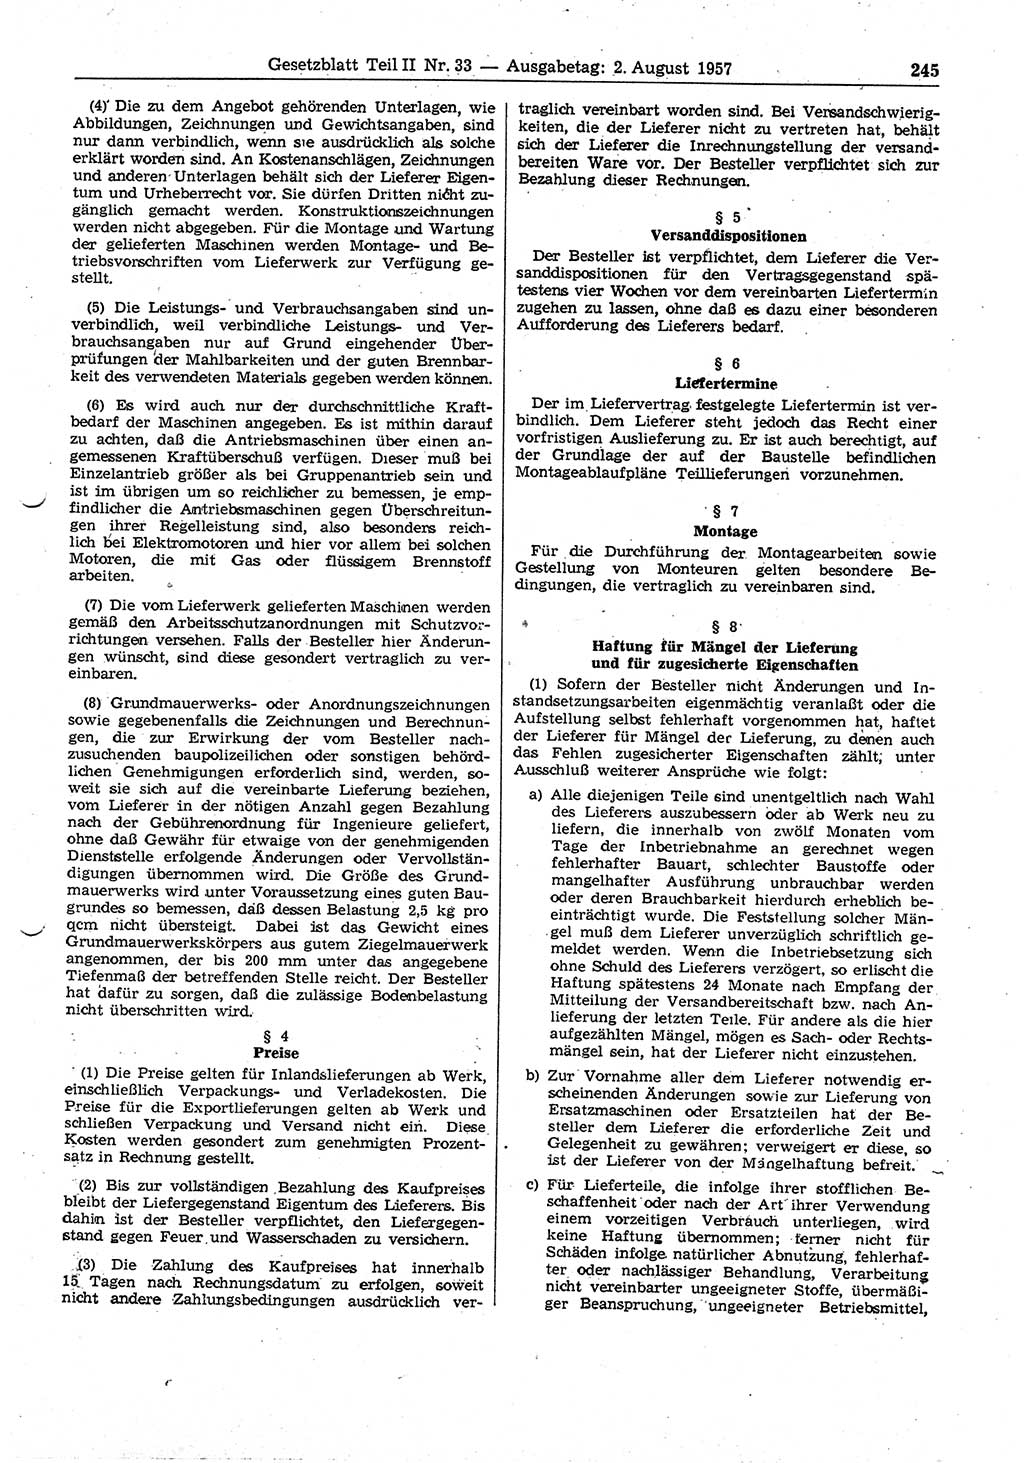 Gesetzblatt (GBl.) der Deutschen Demokratischen Republik (DDR) Teil ⅠⅠ 1957, Seite 245 (GBl. DDR ⅠⅠ 1957, S. 245)